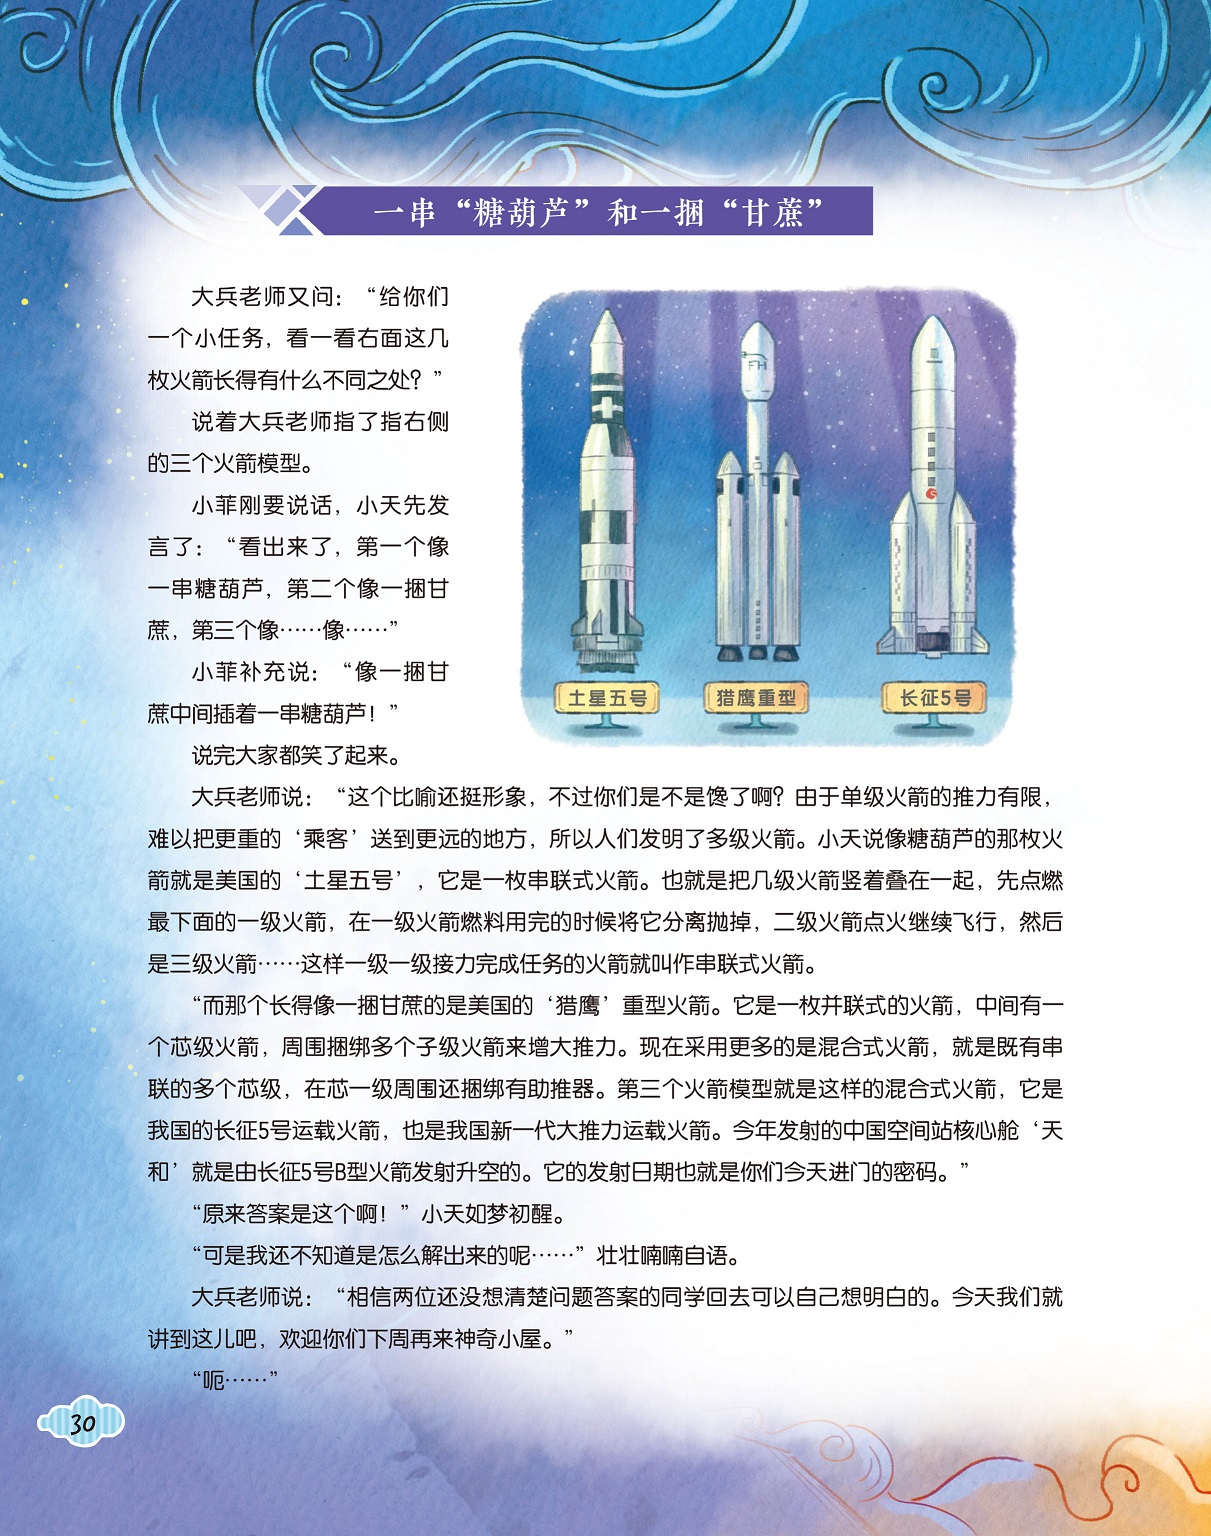 单级火箭推力有限,串联式火箭和混合式火箭